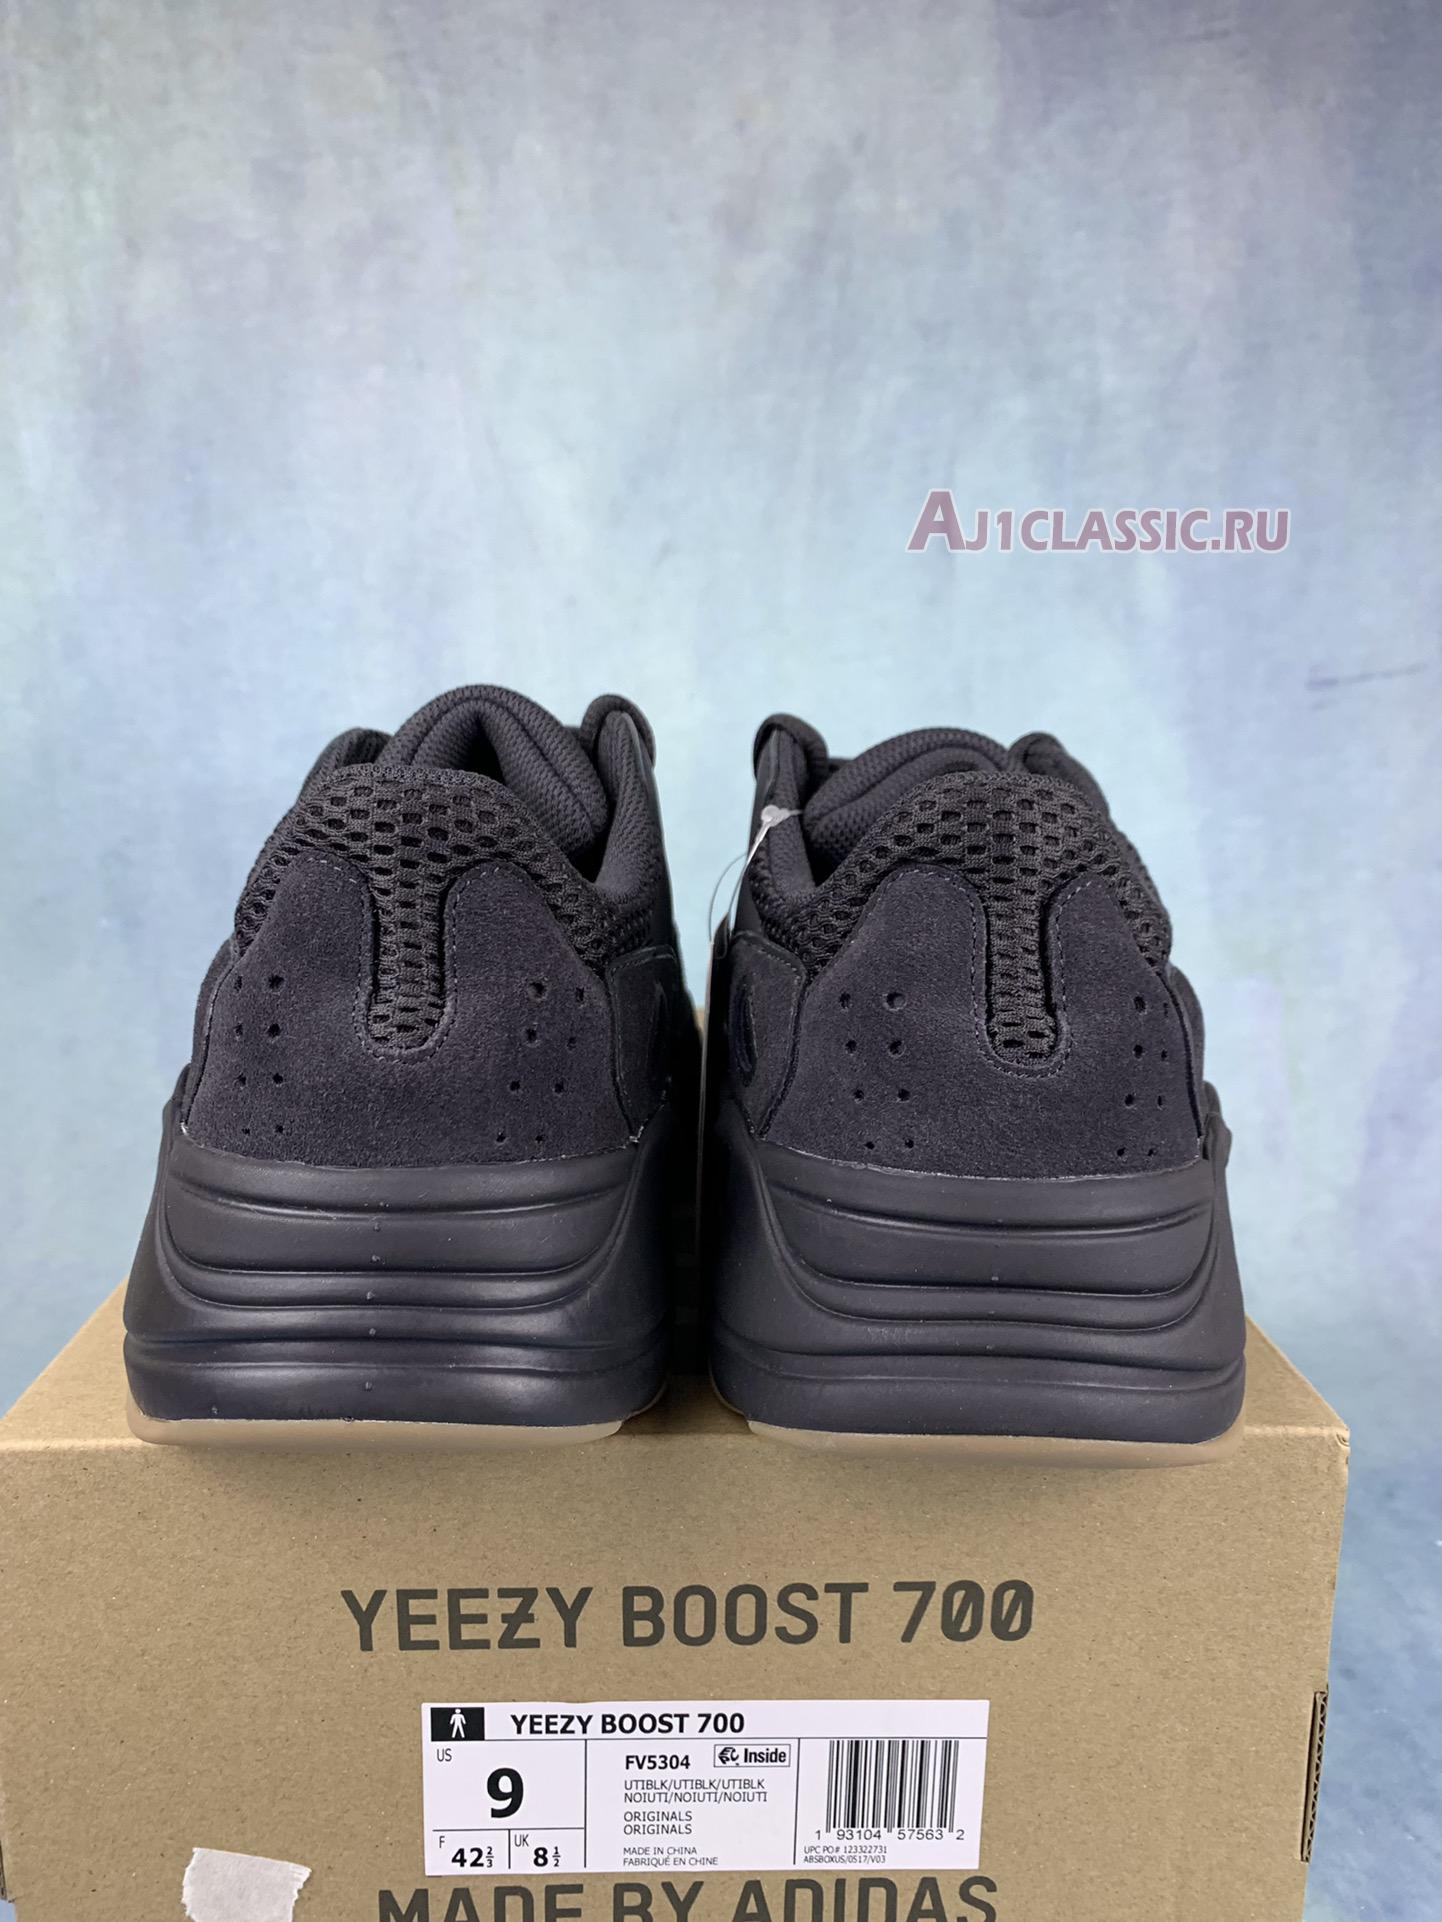 Adidas Yeezy Boost 700 "Utility Black" FV5304-2